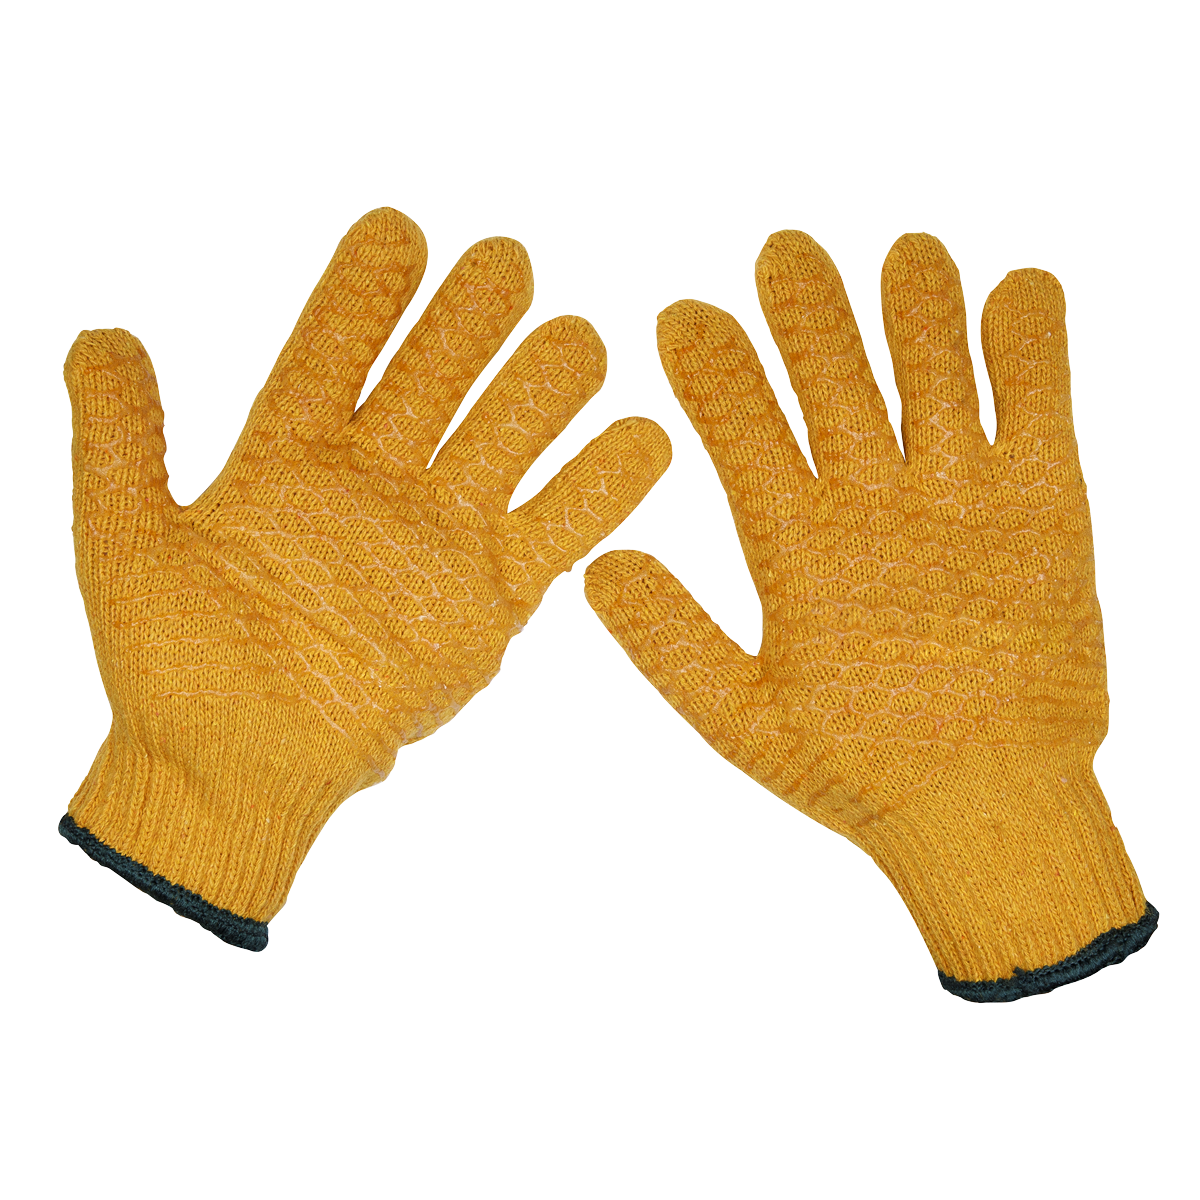 Anti-Slip Handling Gloves (X-Large) - Pair - SSP33 - Farming Parts